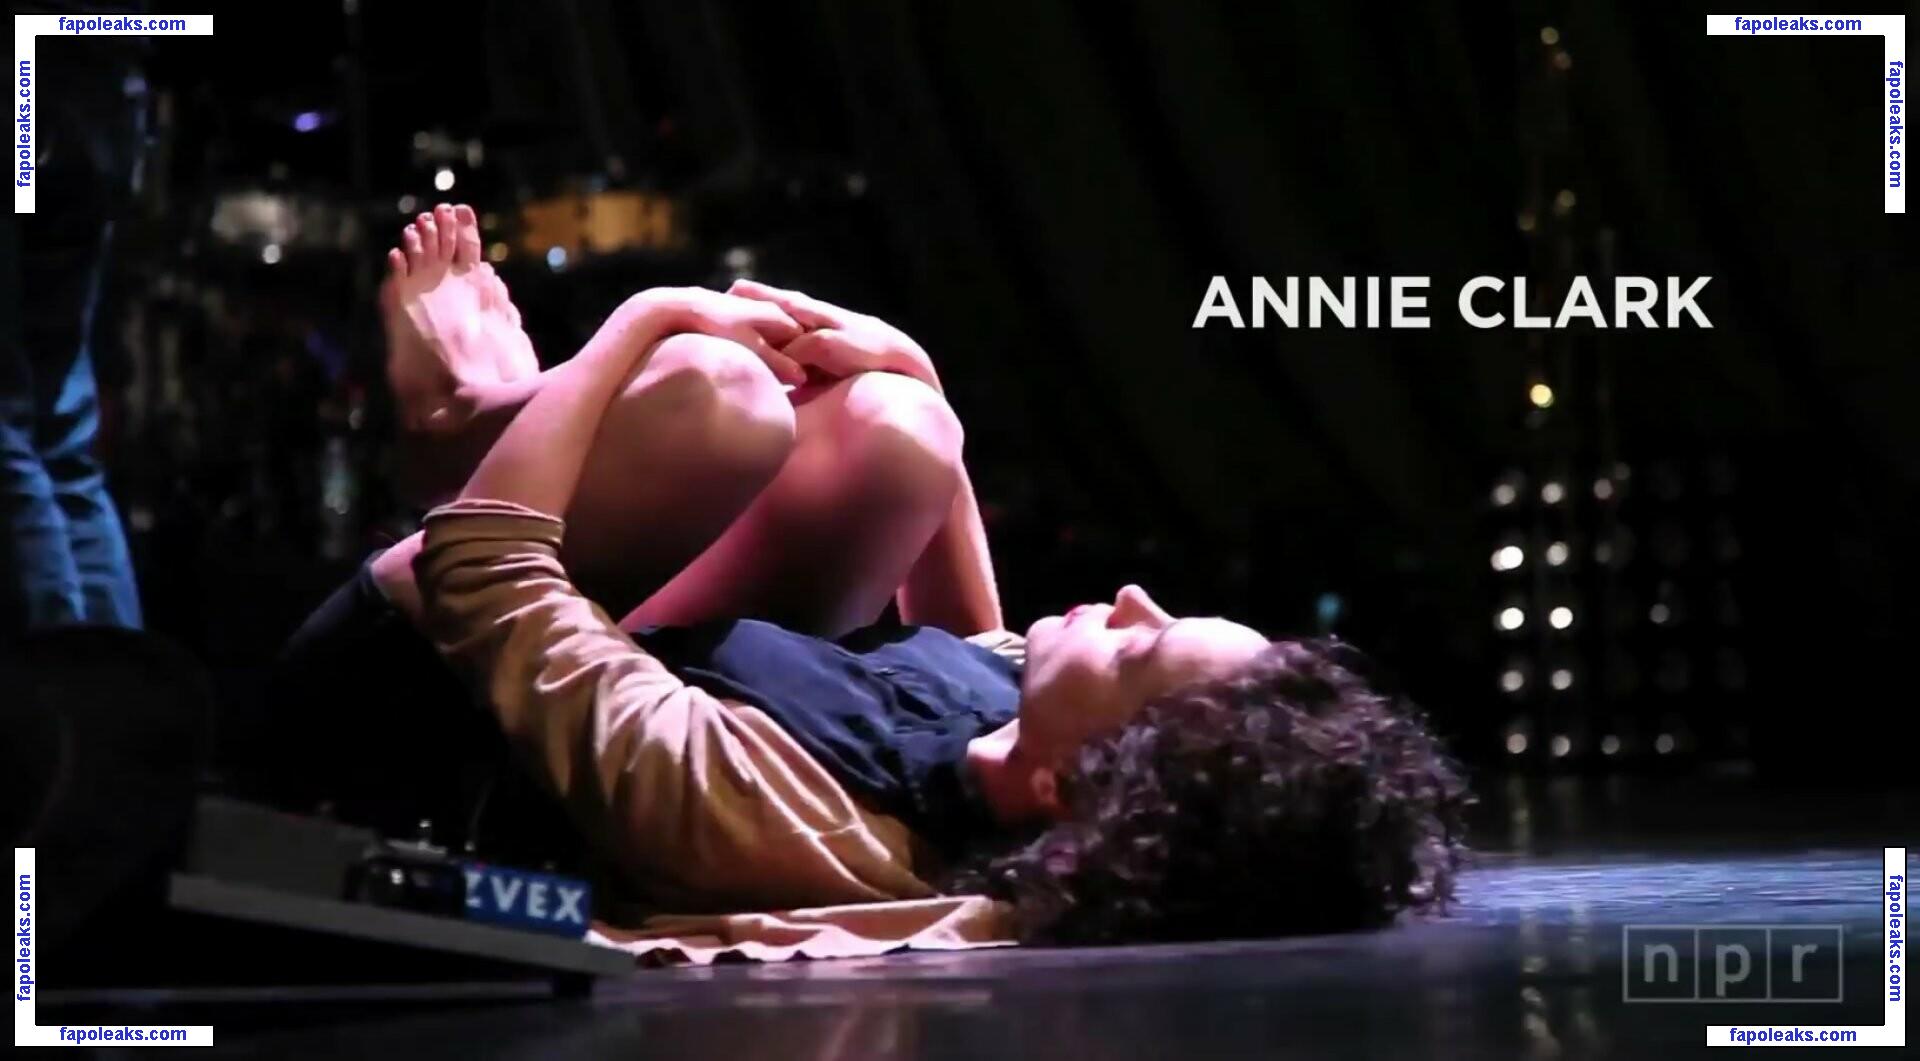 Annie Clark / annie__clark голая фото #0008 с Онлифанс